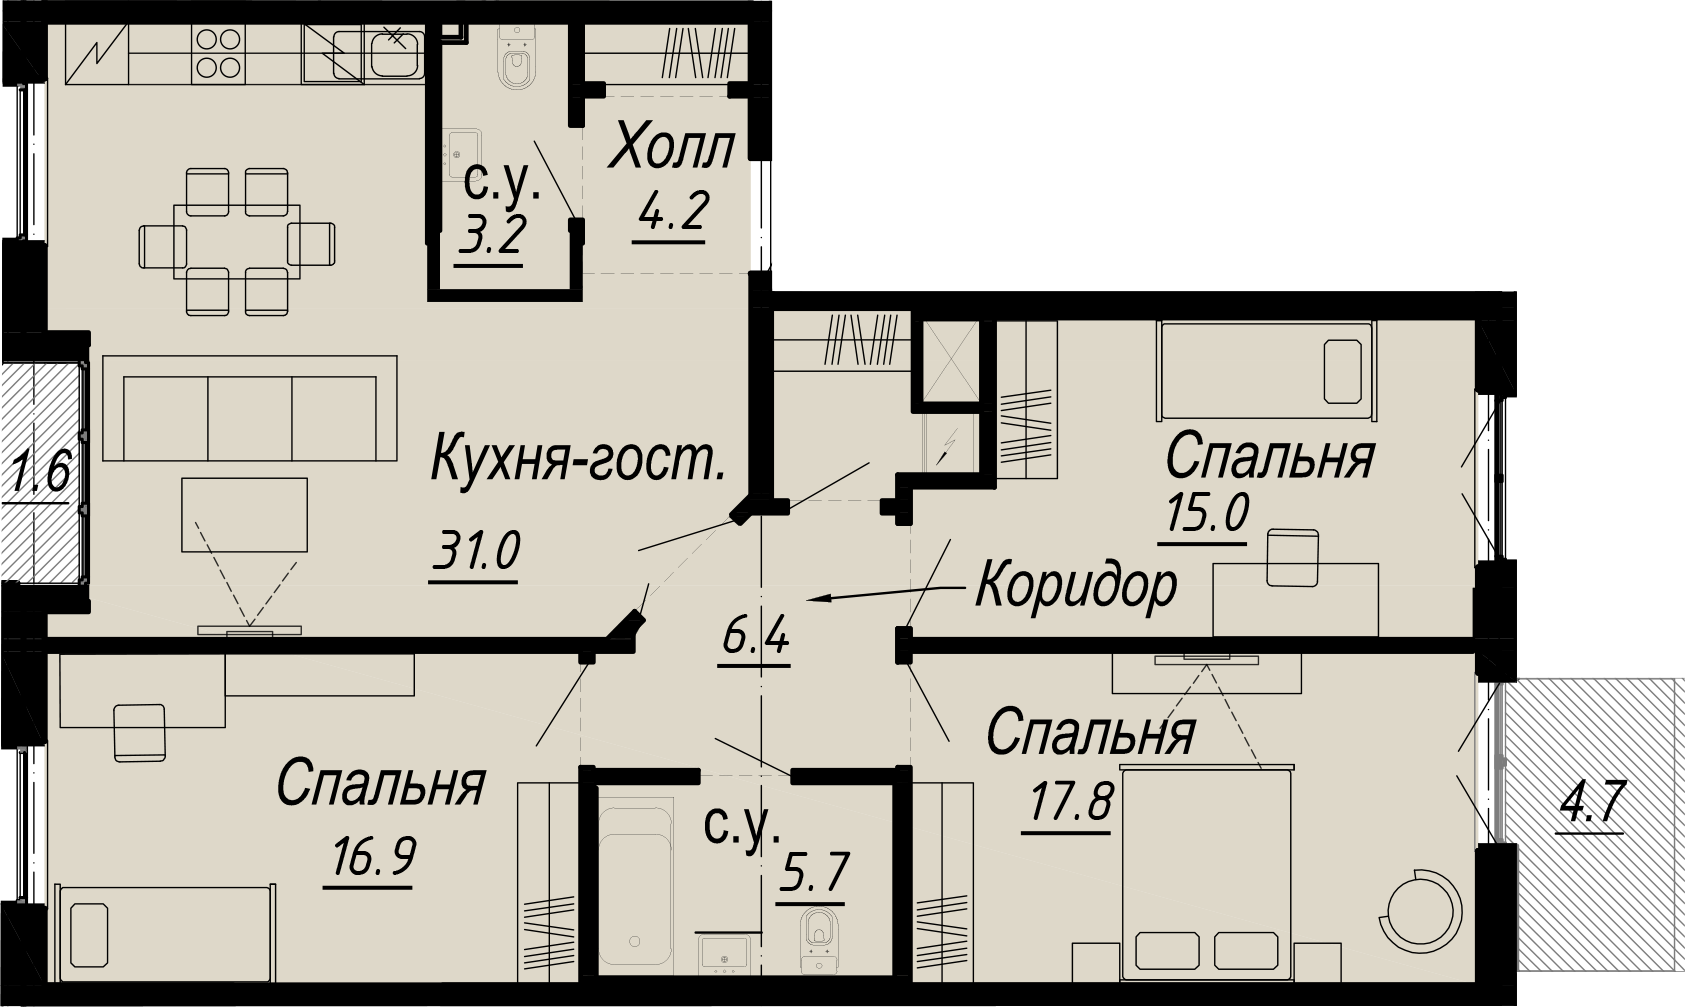 3-комнатная квартира  №25-5 в Meltzer Hall: 107.12 м², этаж 5 - купить в Санкт-Петербурге